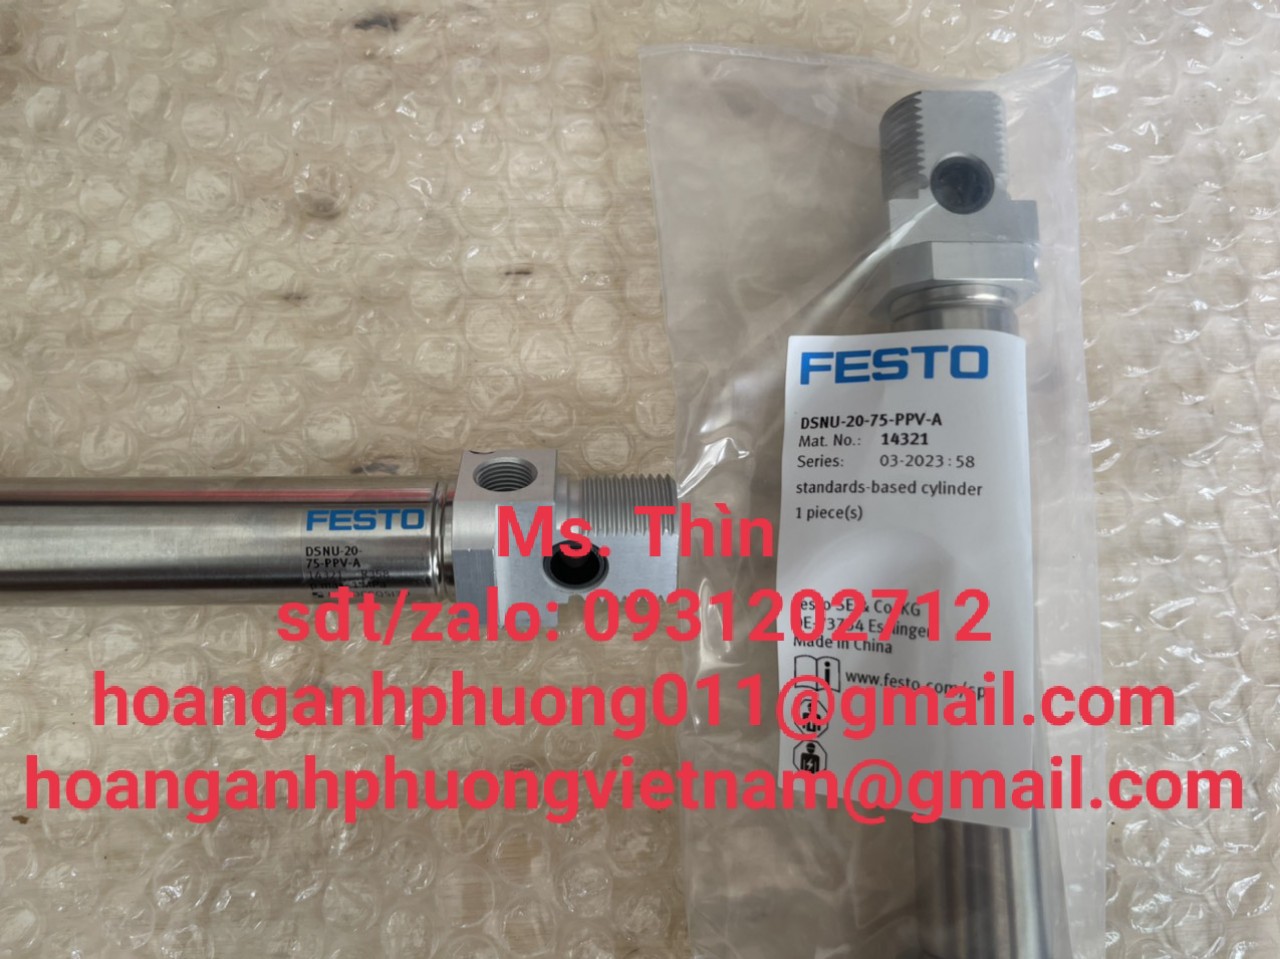 DSNU-20-75-PPV-A  Xy lanh Festo  hàng nhập khẩu  new 100%